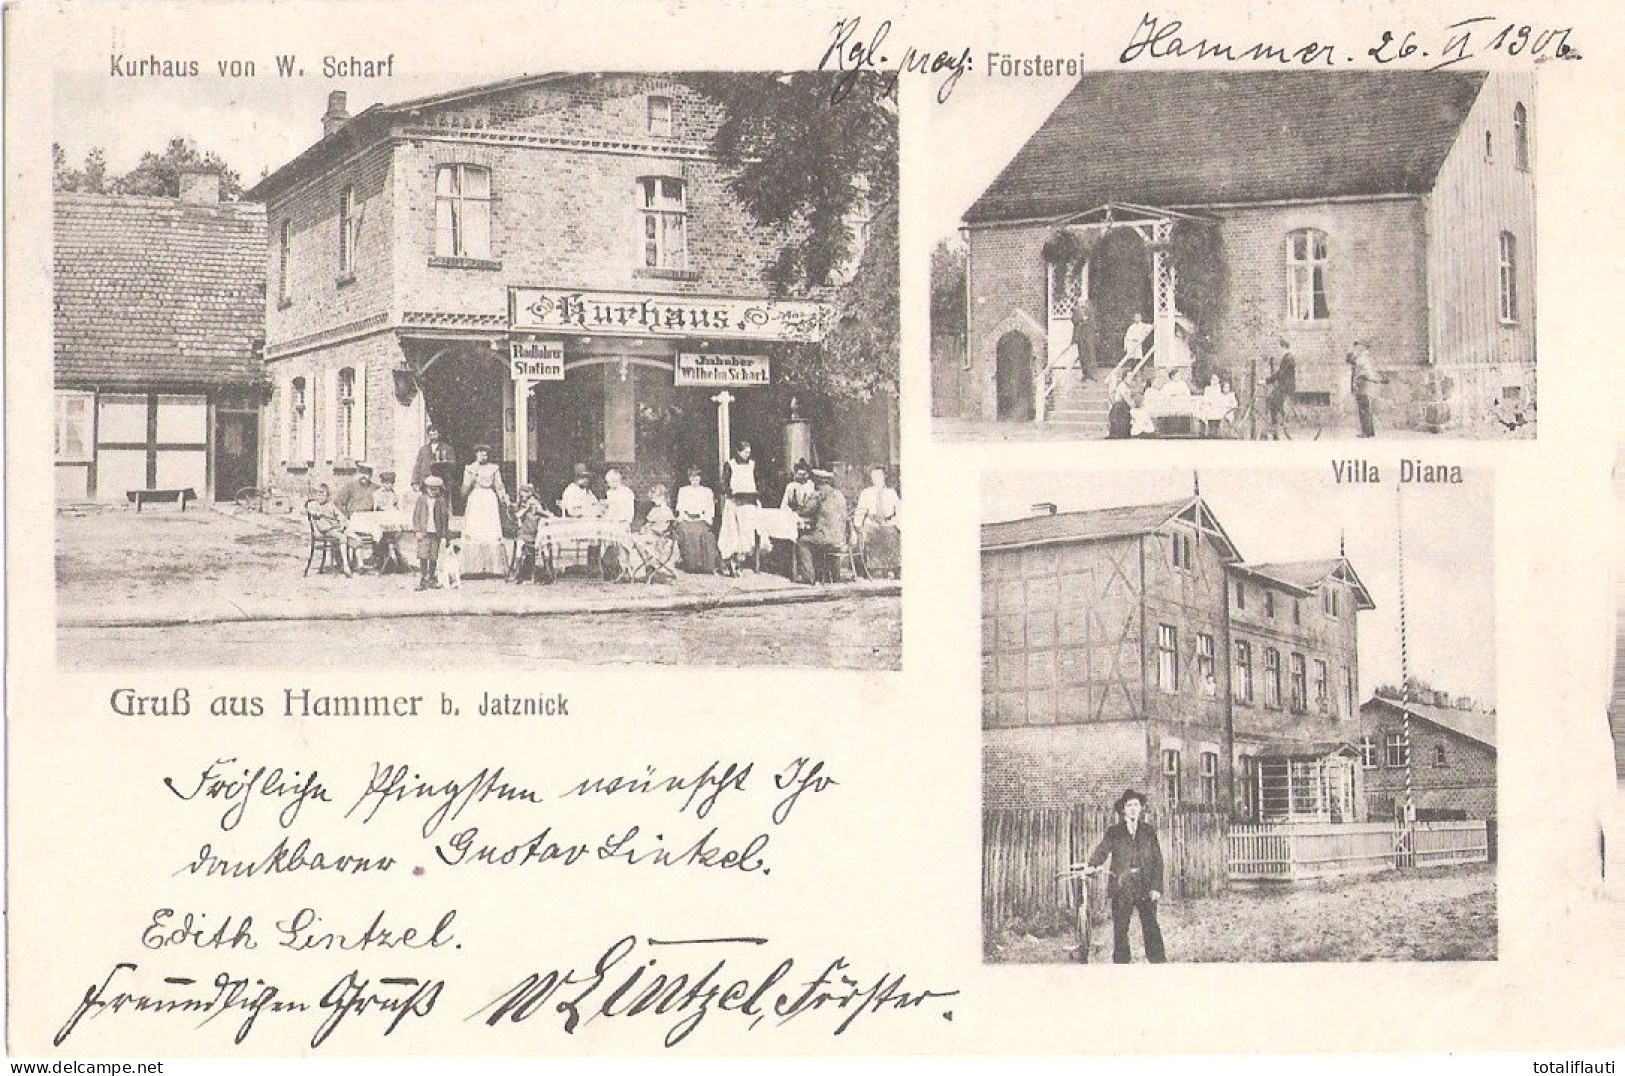 Gruß Aus HAMMER Bei Jatznick Kurhaus Radfahrer Station Inh Wilhelm Scharf Försterei Villa Diana Radfahrer 2.6.1906 Gelau - Pasewalk